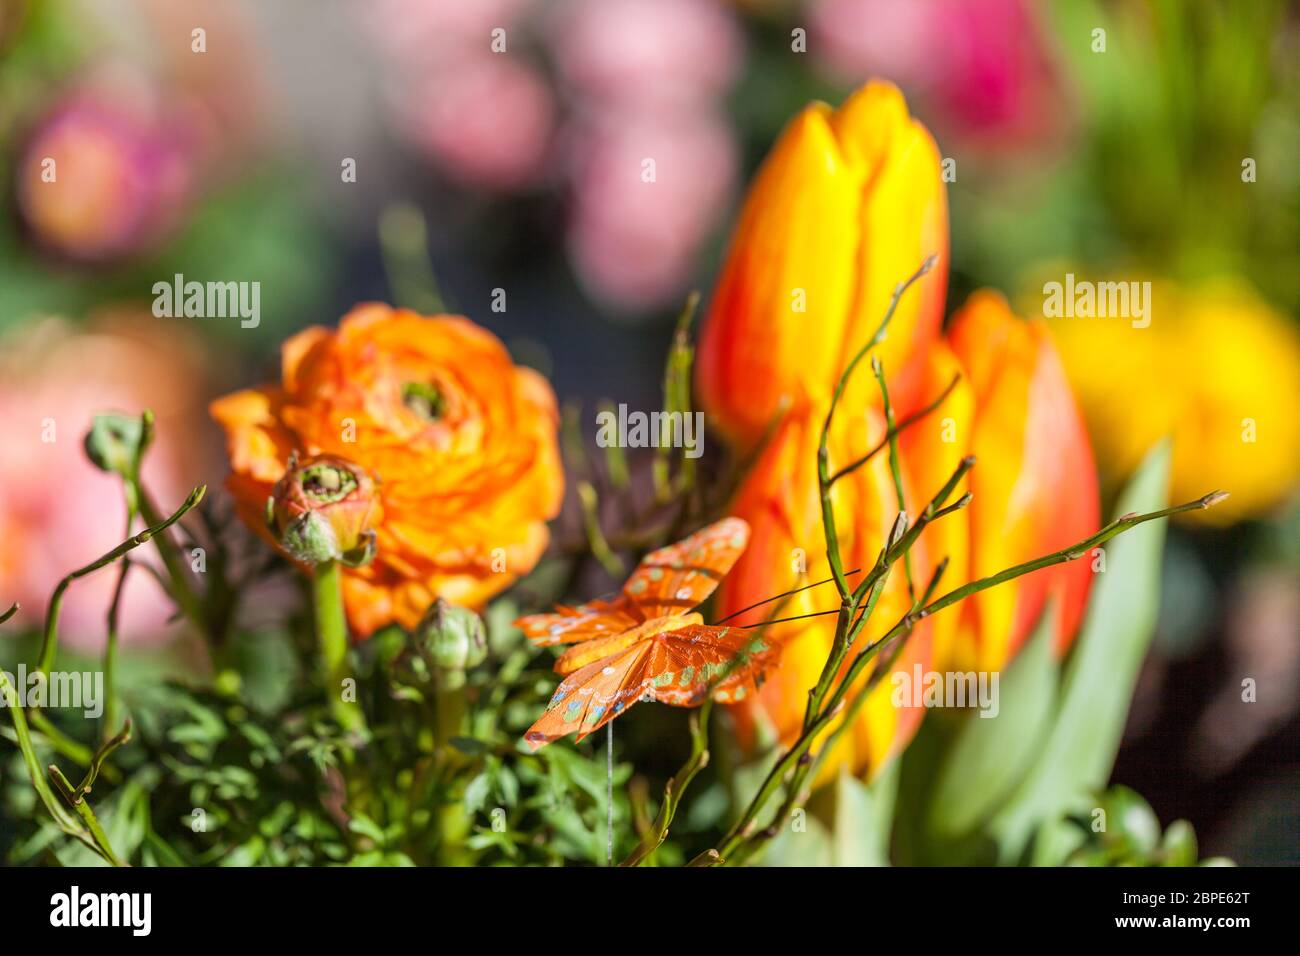 Bunter gemischte Blumen Blumenstrauß mit verschiedenen Blüten zum Valentinstag und Muttertag Stock Photo